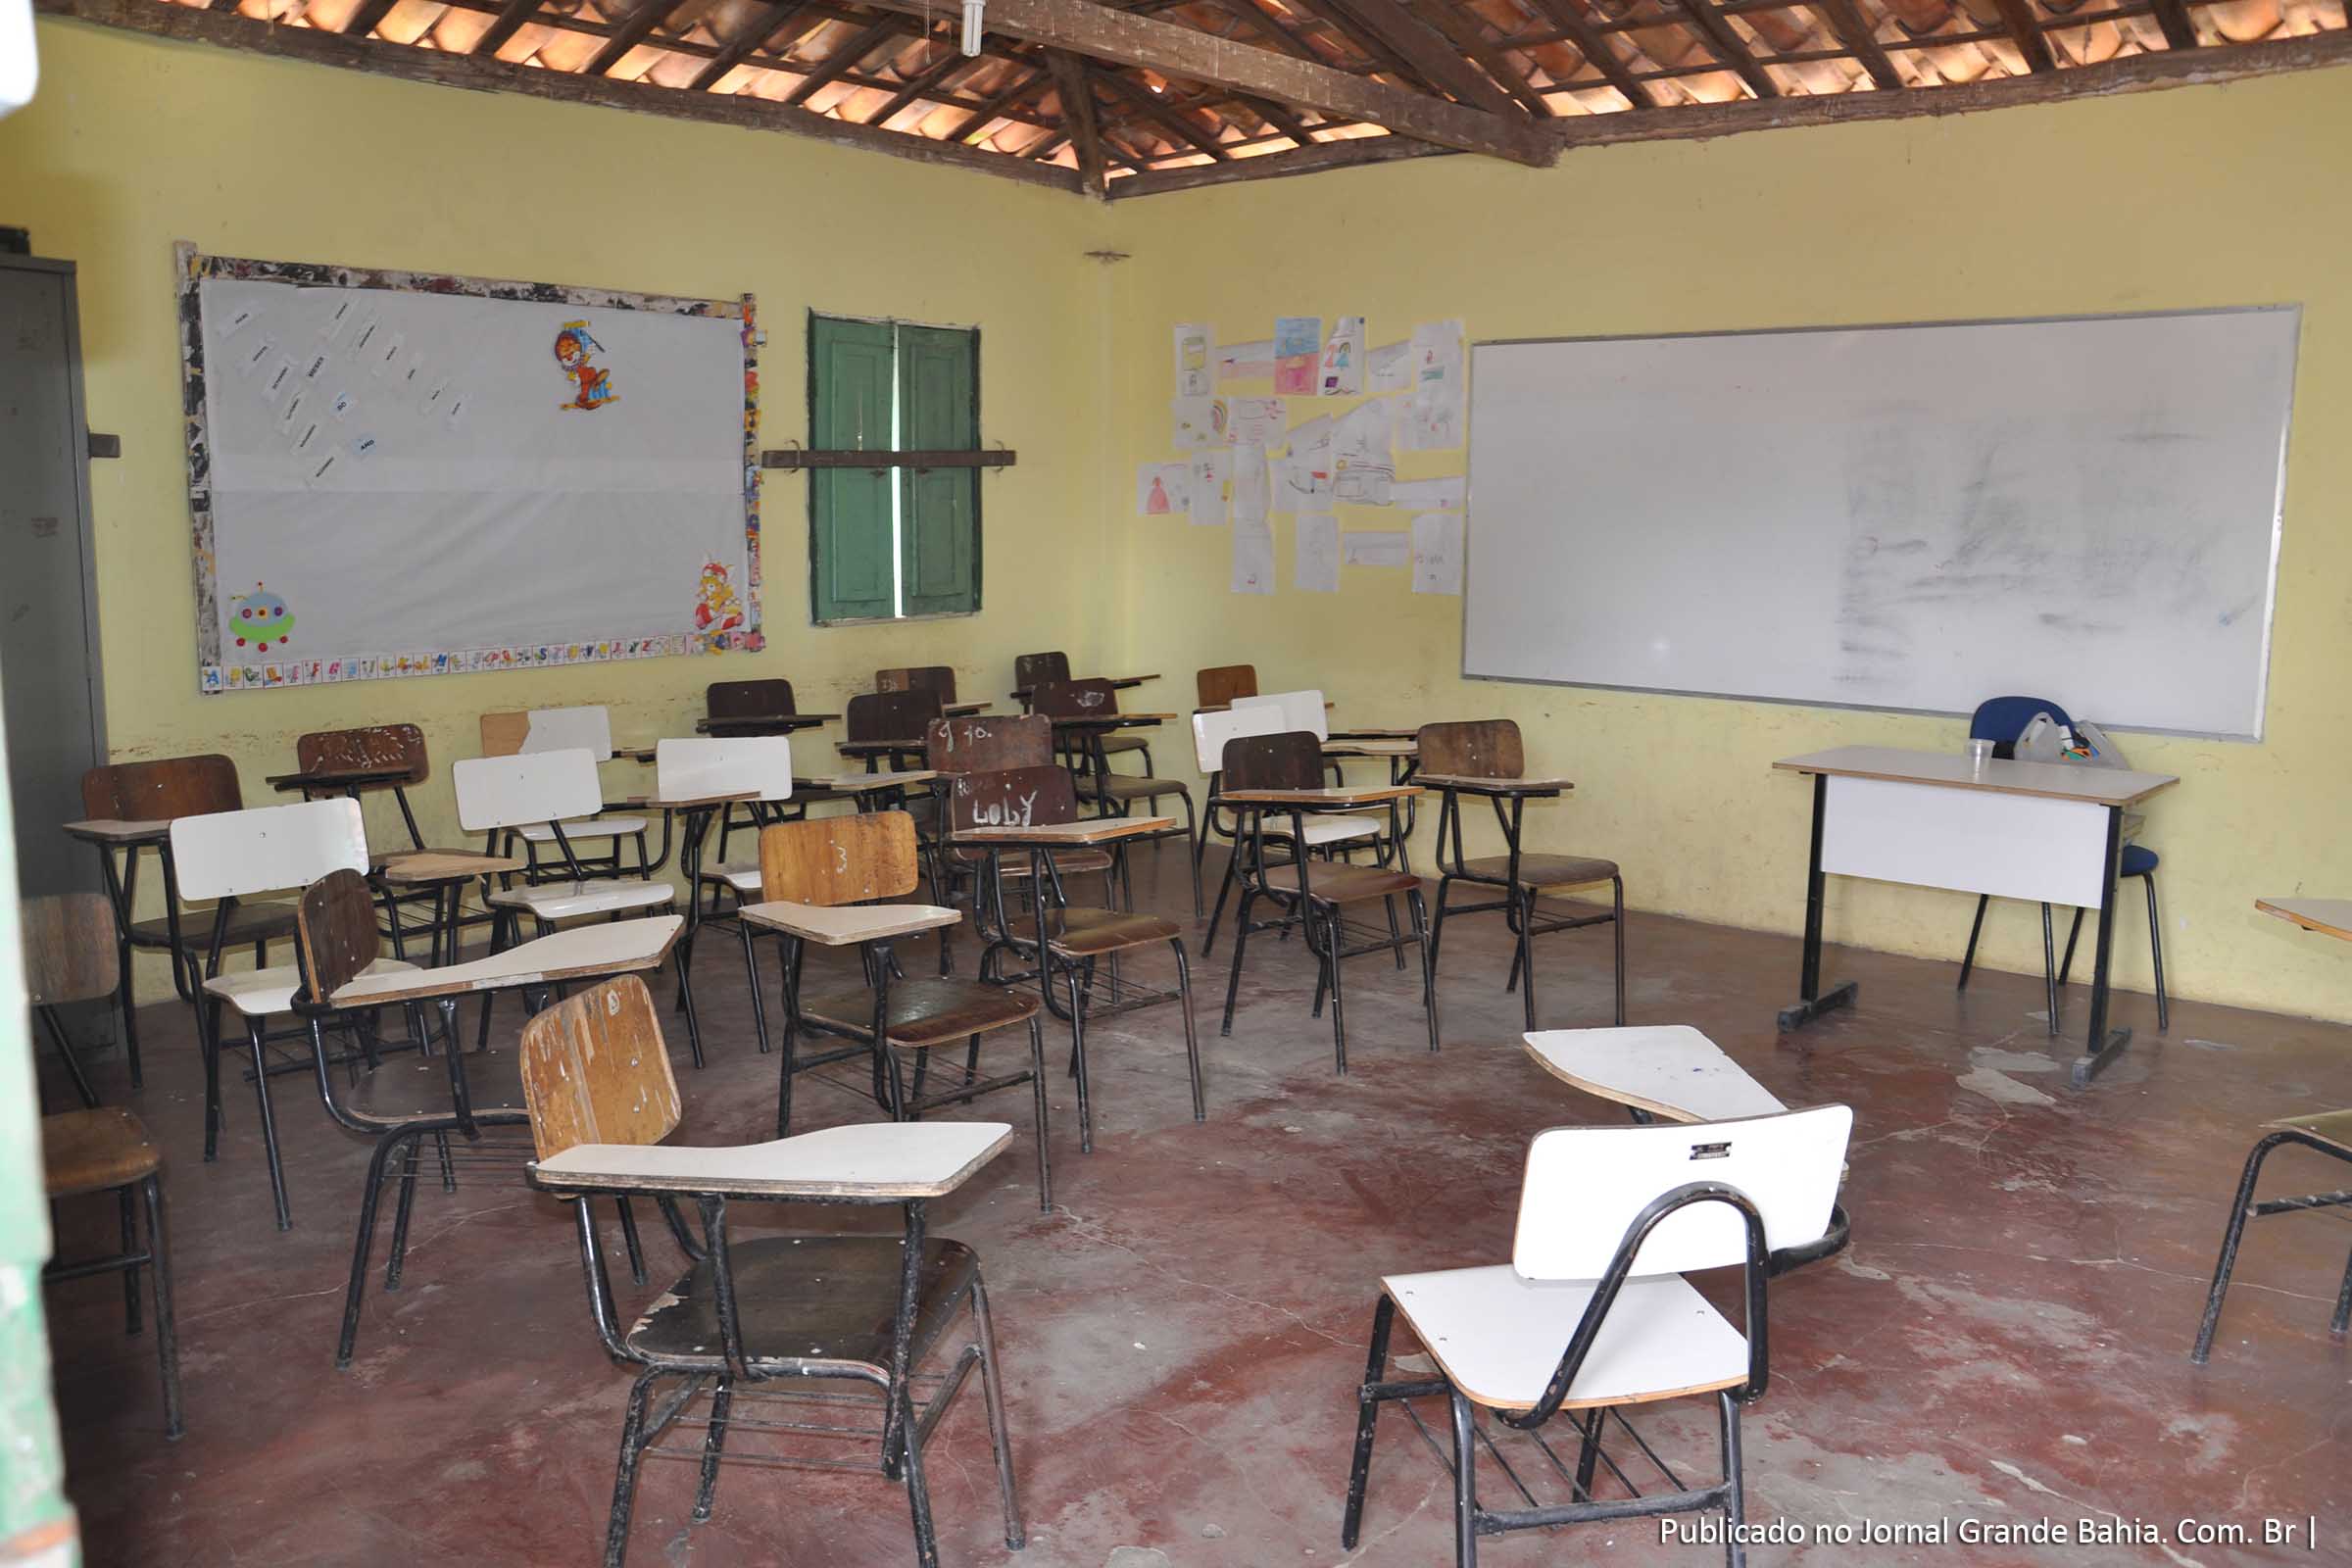 Descaso com educação em Feira de Santana por parte do município fica evidente quando se observa a qualidade física das escolas.